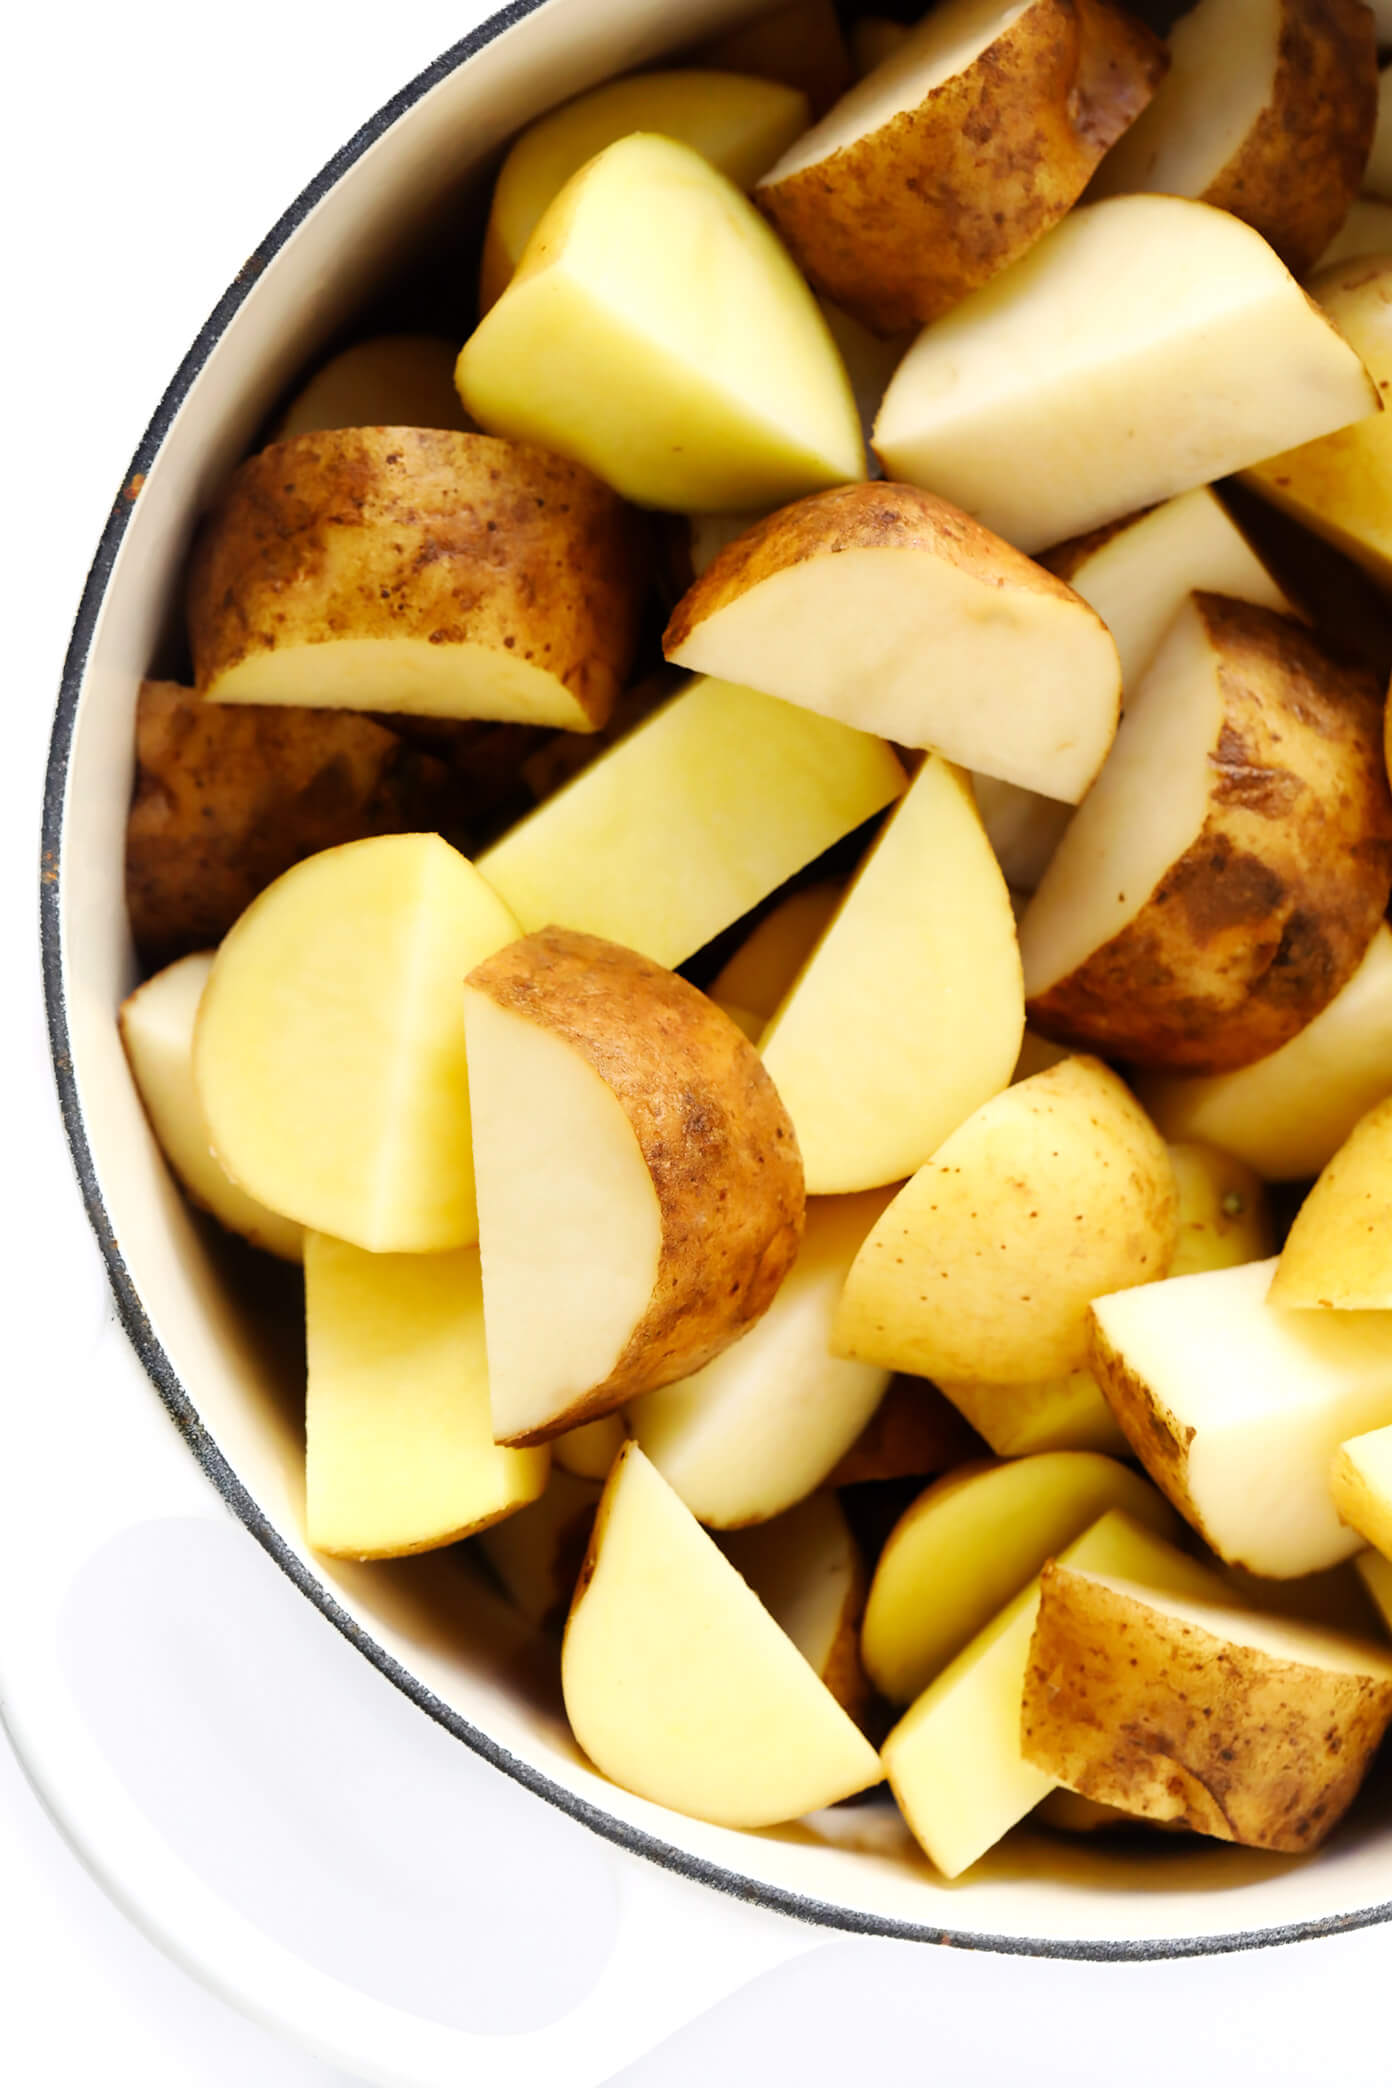 Yukon金土豆和赤褐色土豆|土豆泥食谱